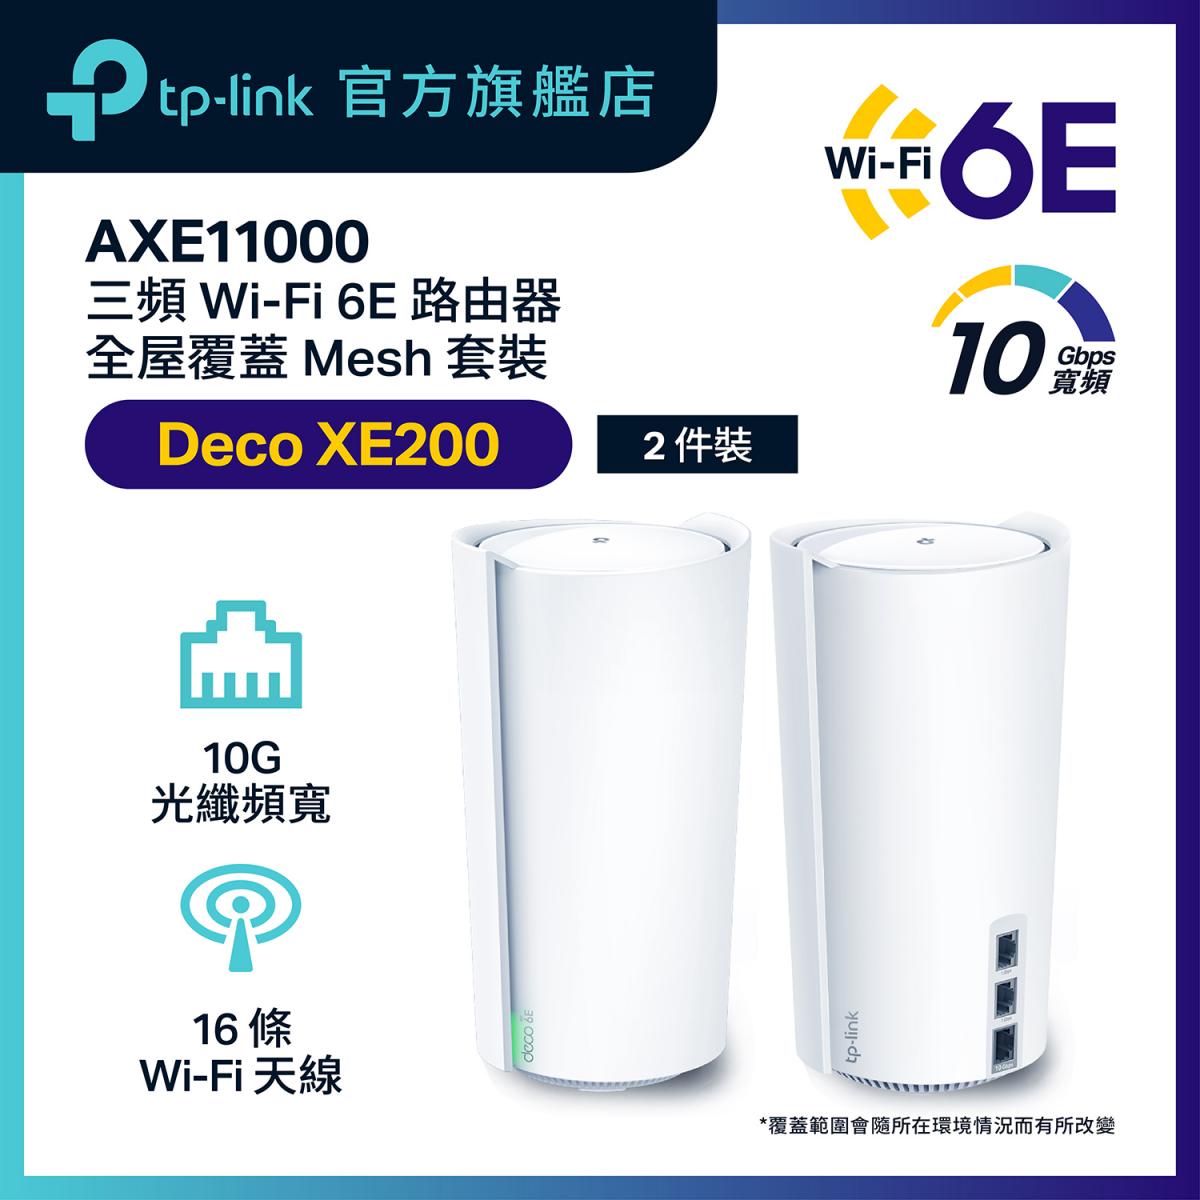 Deco XE200(兩件裝) AXE11000完整家庭 三頻 Mesh Wi-Fi 6E 路由器